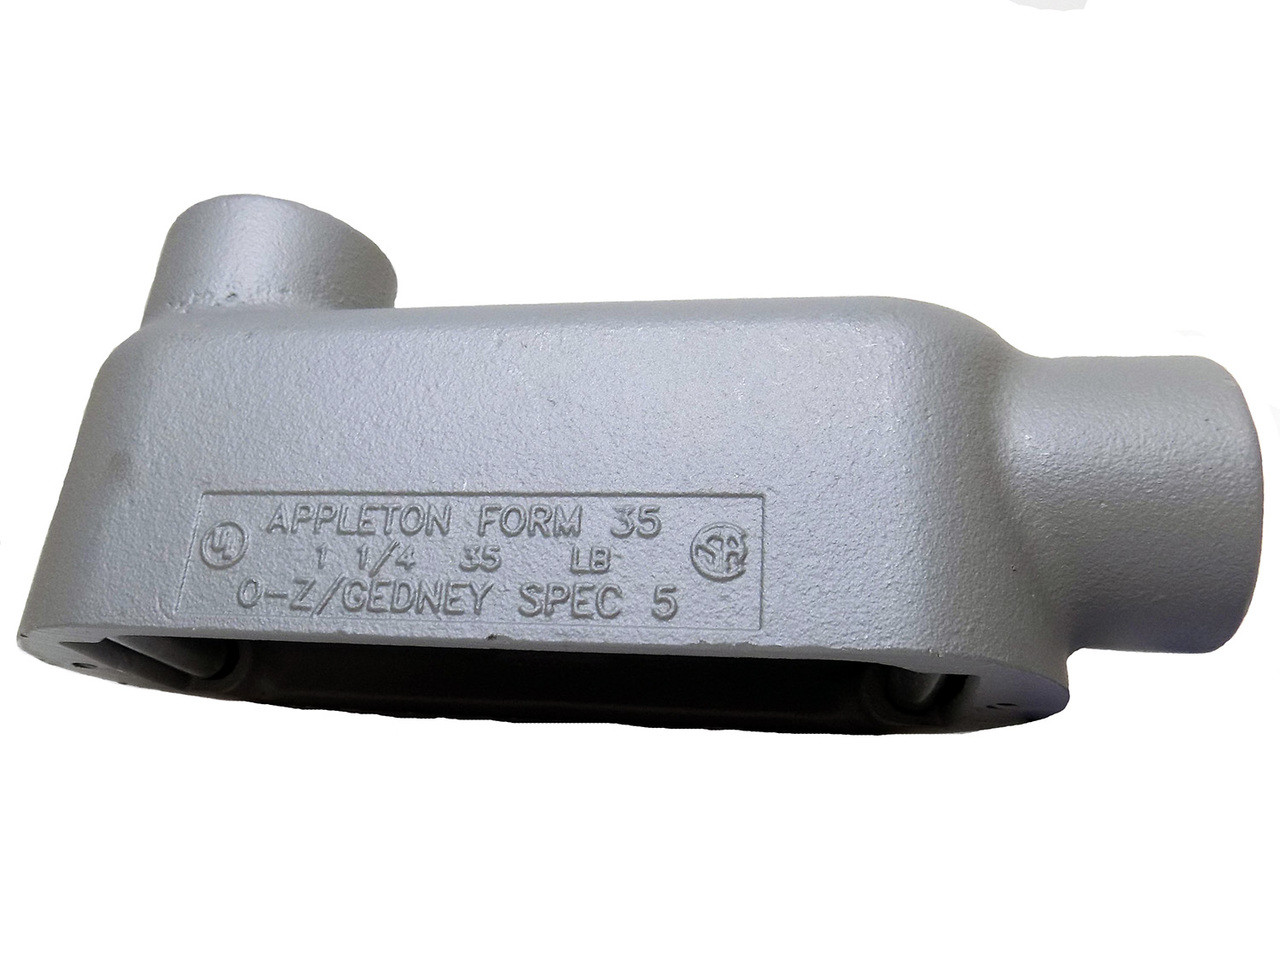 Appleton LB125-M - 1-1/4" Form 35 Unilet Conduit Outlet Body Malleable Iron